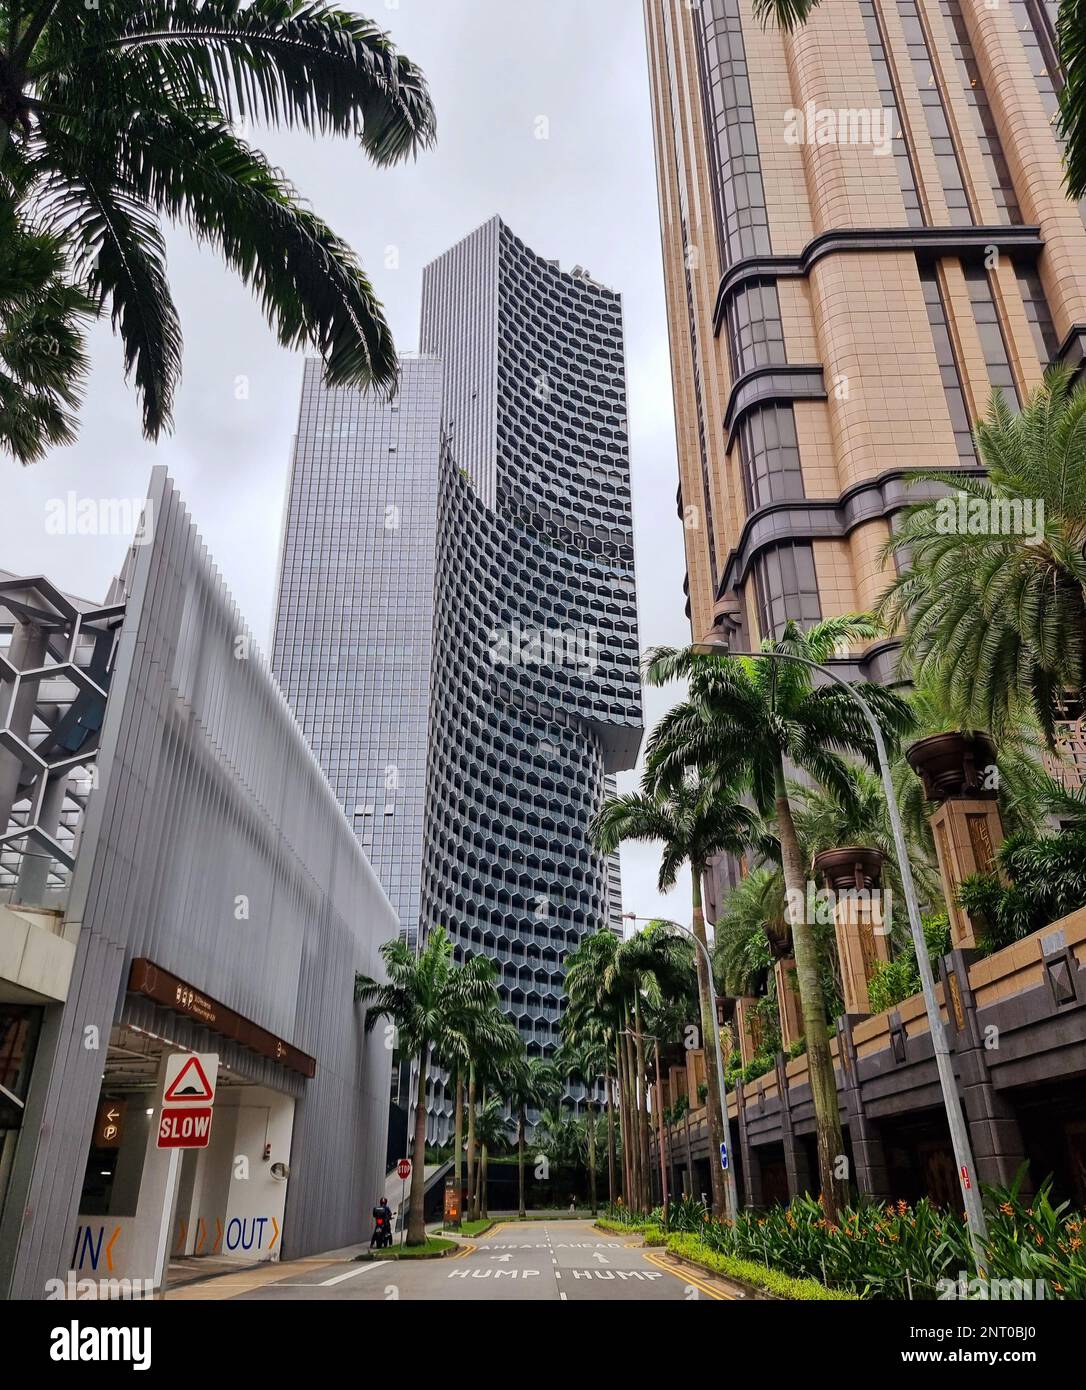 Bugis est une région de Singapour qui couvre Bugis Street maintenant située dans le centre commercial Bugis Junction. Singapour. Banque D'Images